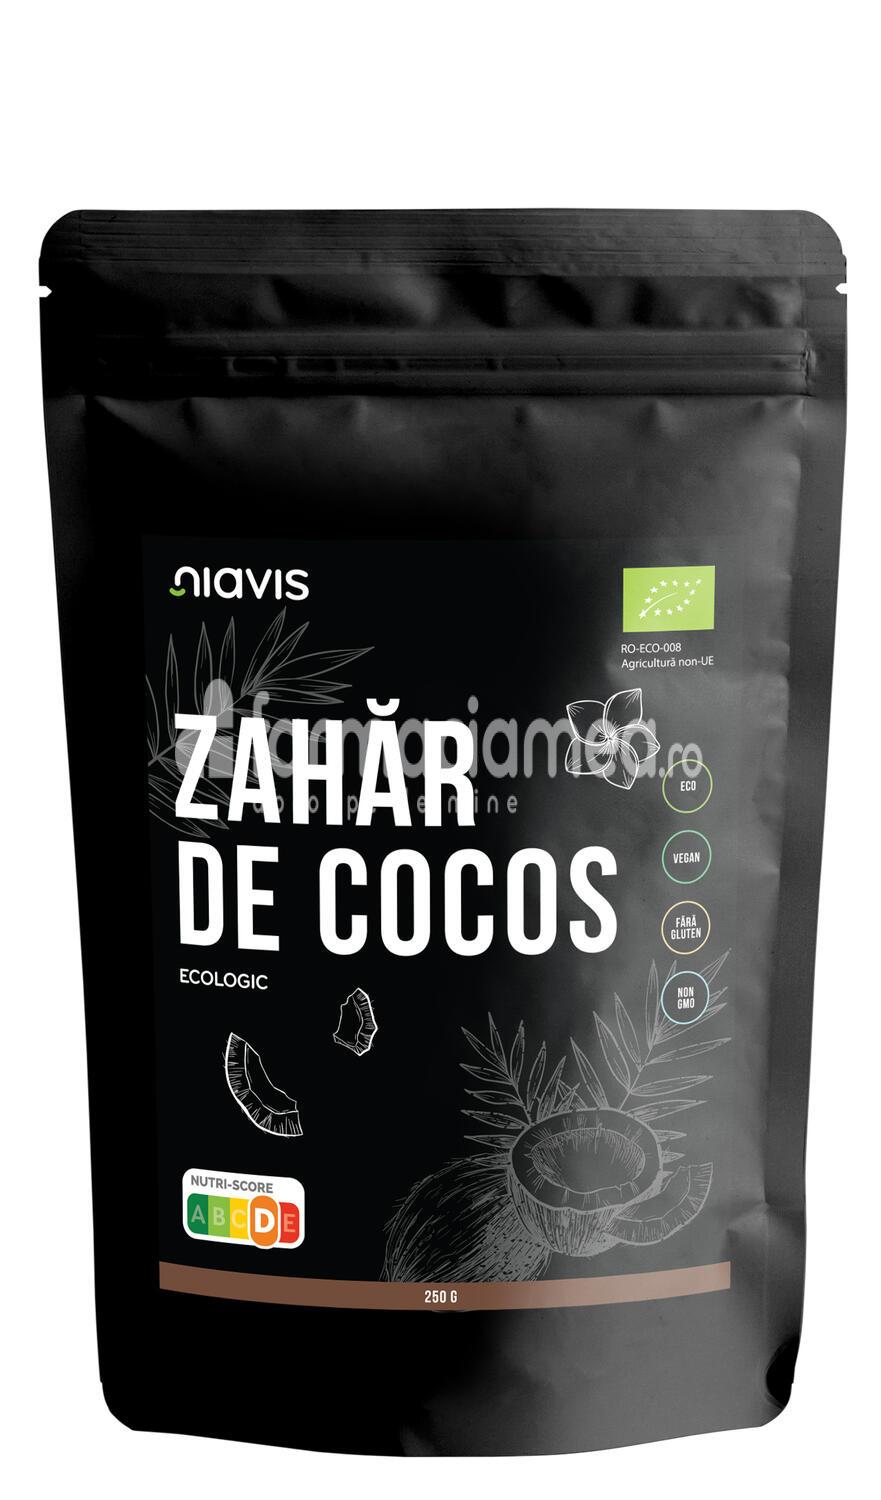 Alimente și băuturi - Niavis Zahar de cocos extra virgin ecologic Bio, 250g, farmaciamea.ro